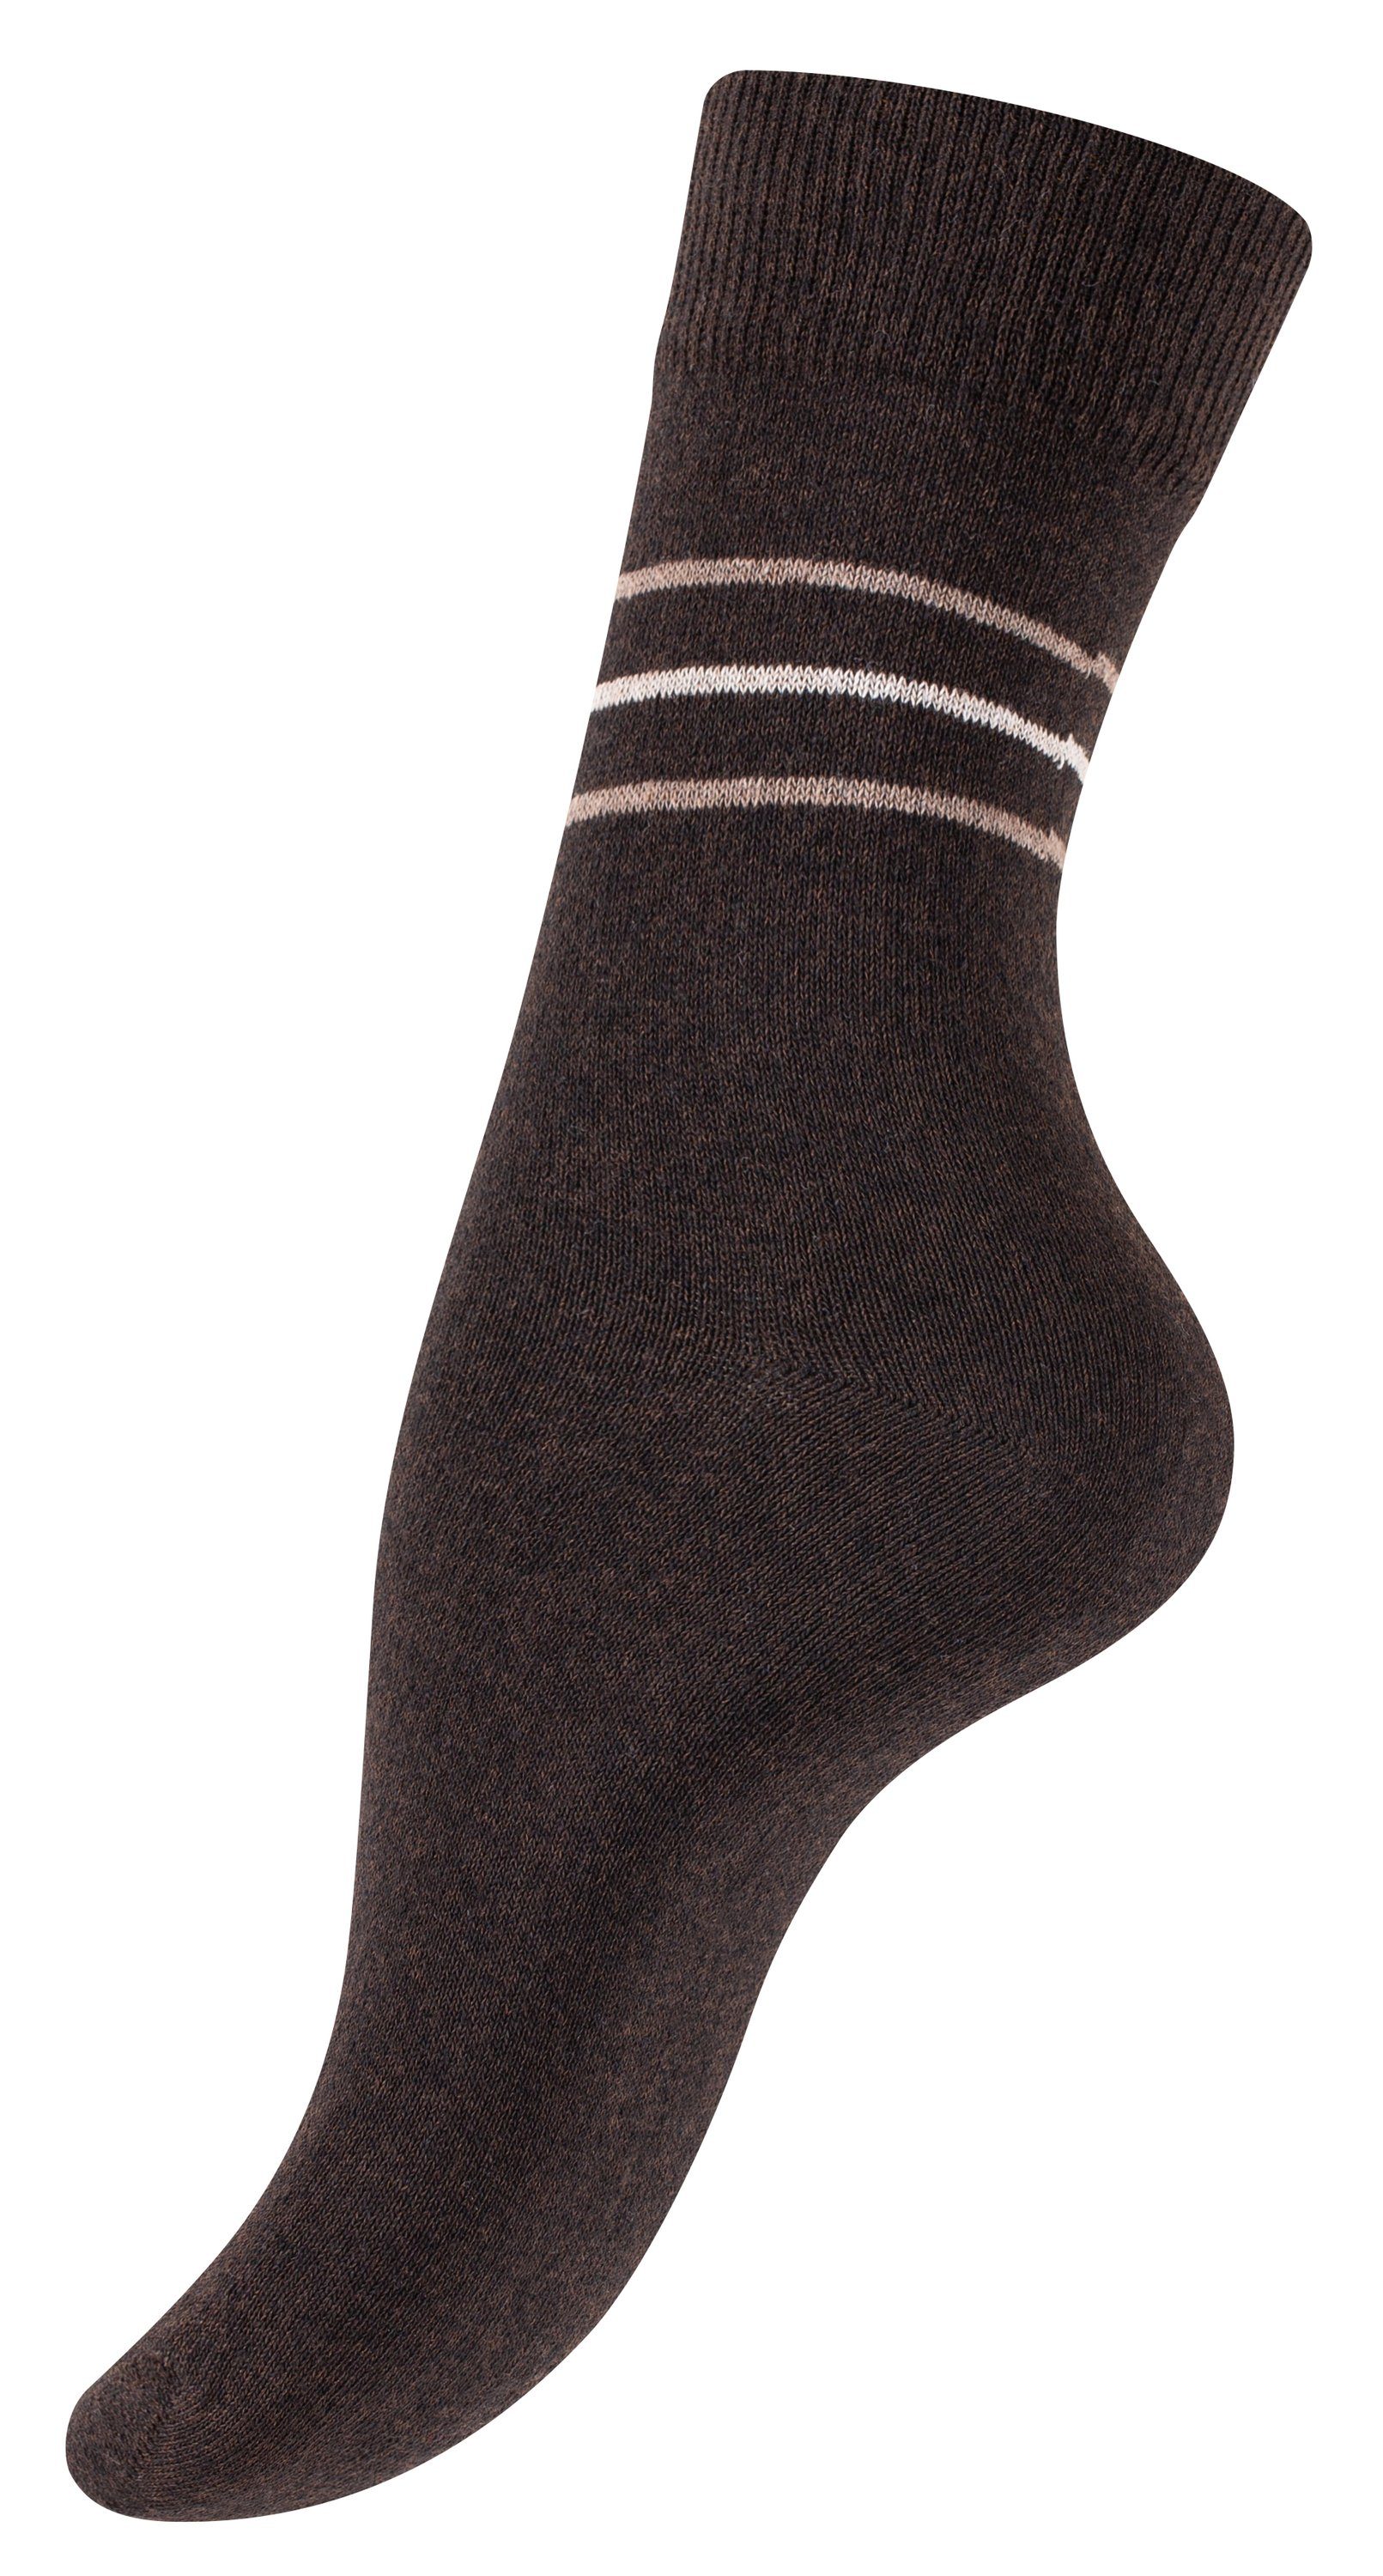 Vincent Creation® Socken (10-Paar) in angenehmer braun/beige Baumwollqualität